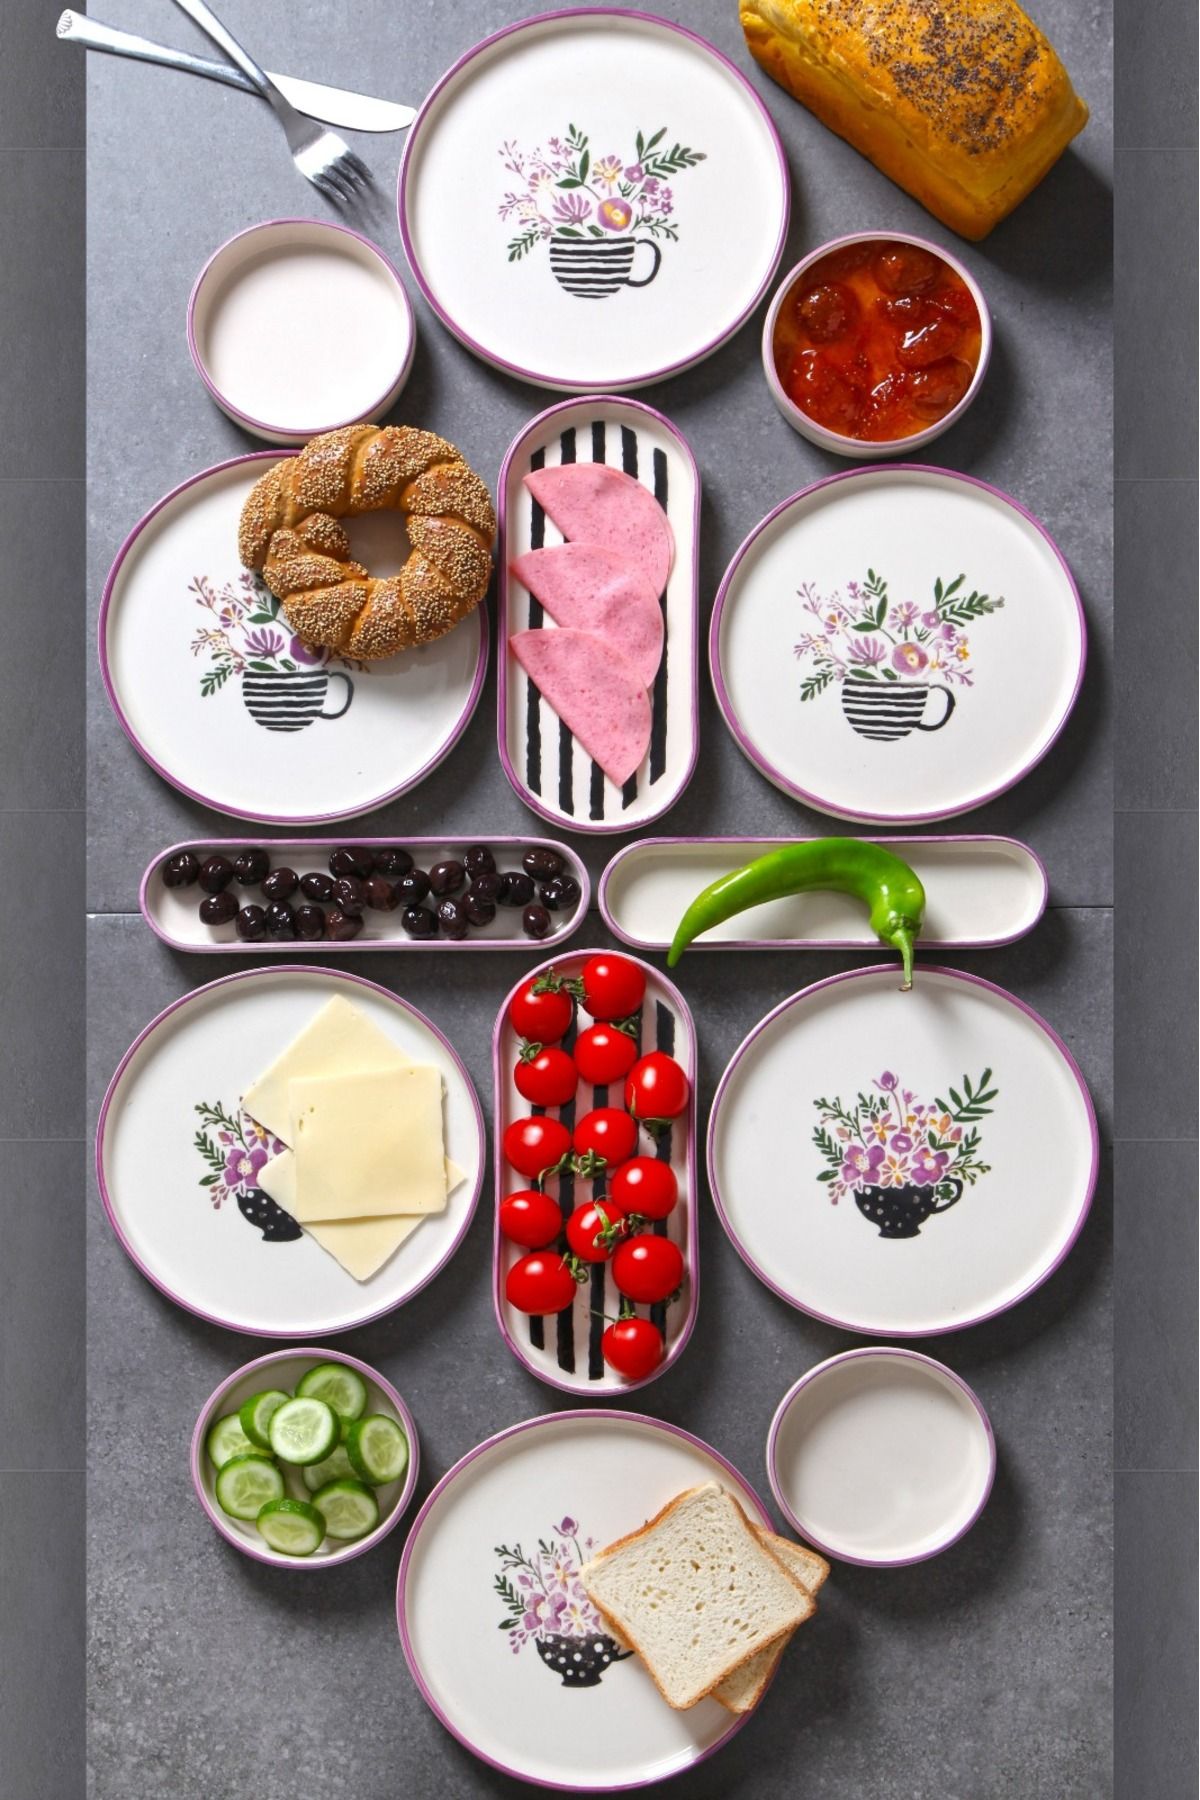 Çavdar Group 14 Parça 6 Kişilik Stackable Fincan Desen Kahvaltı Takımı Handmade Özel Tasarım Kahvaltı Seti